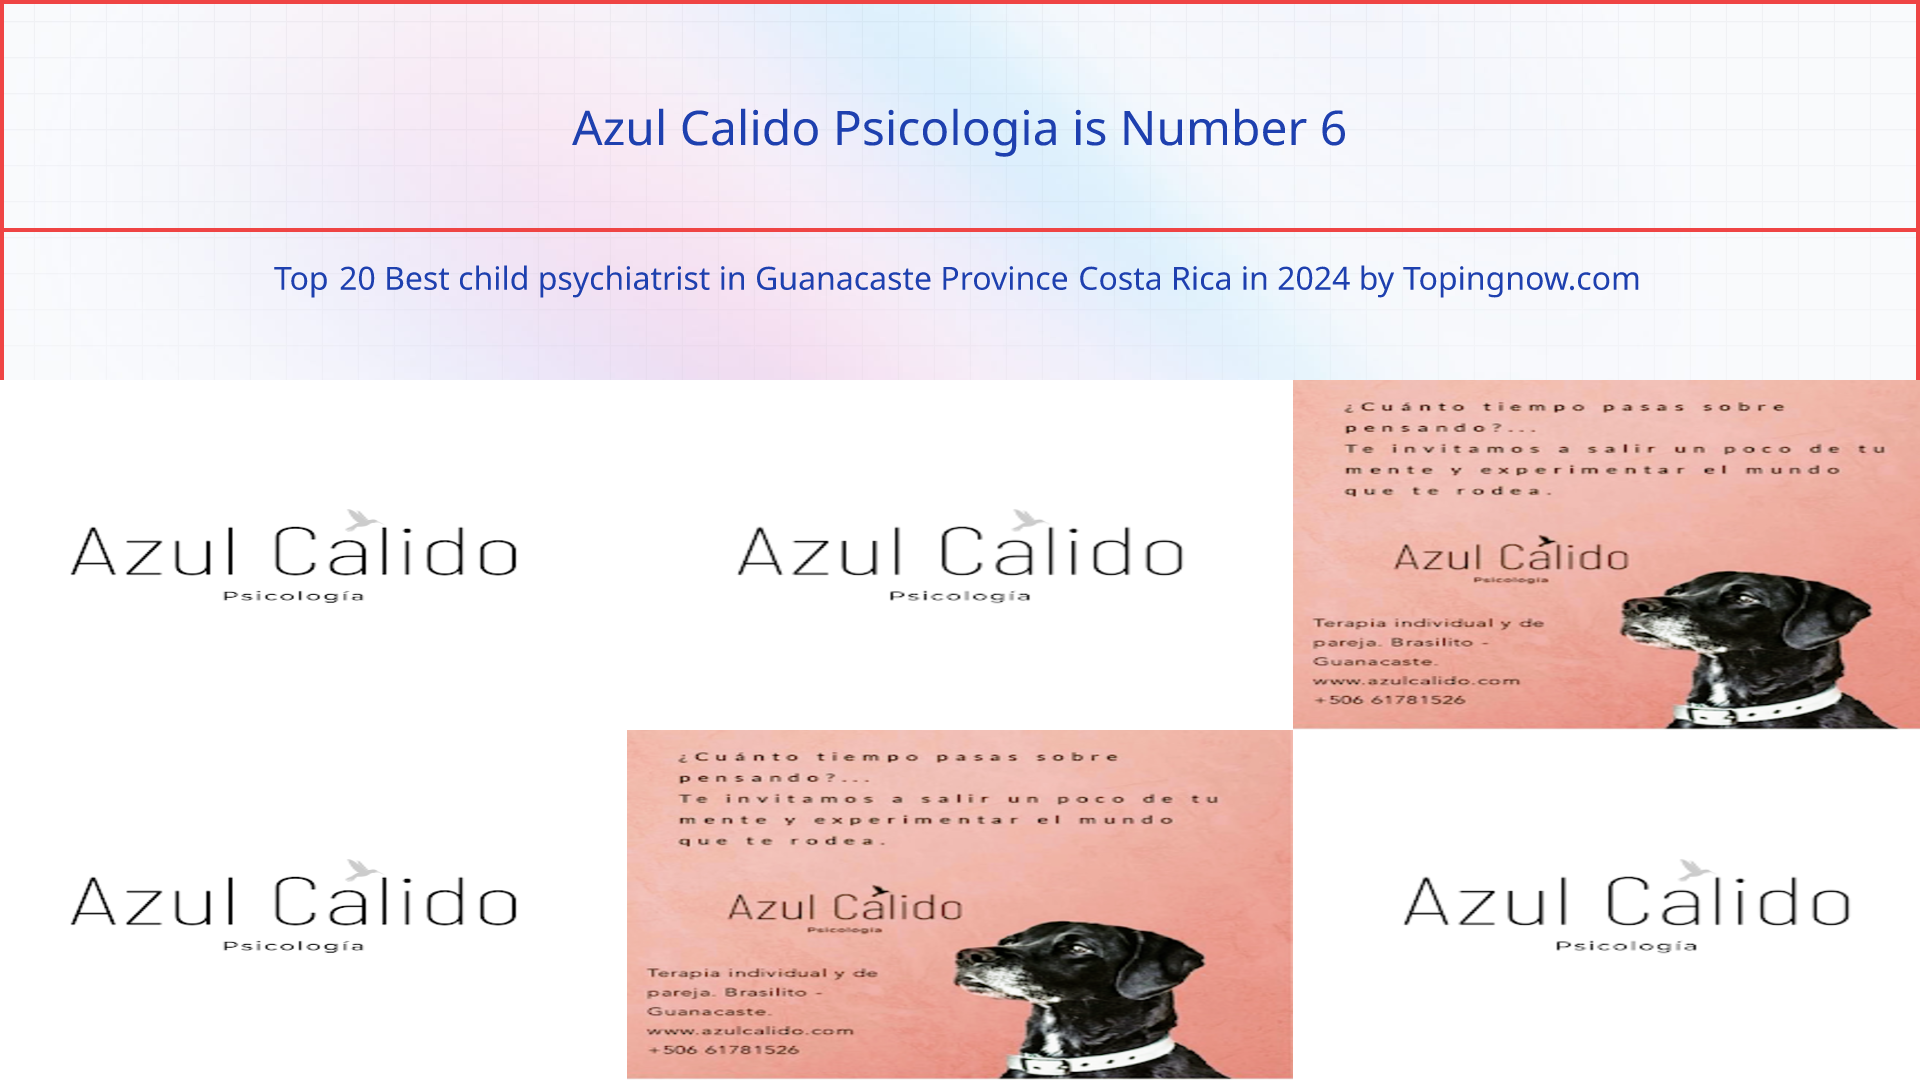 Azul Calido Psicologia: Top 20 Best child psychiatrist in Guanacaste Province Costa Rica in 2024